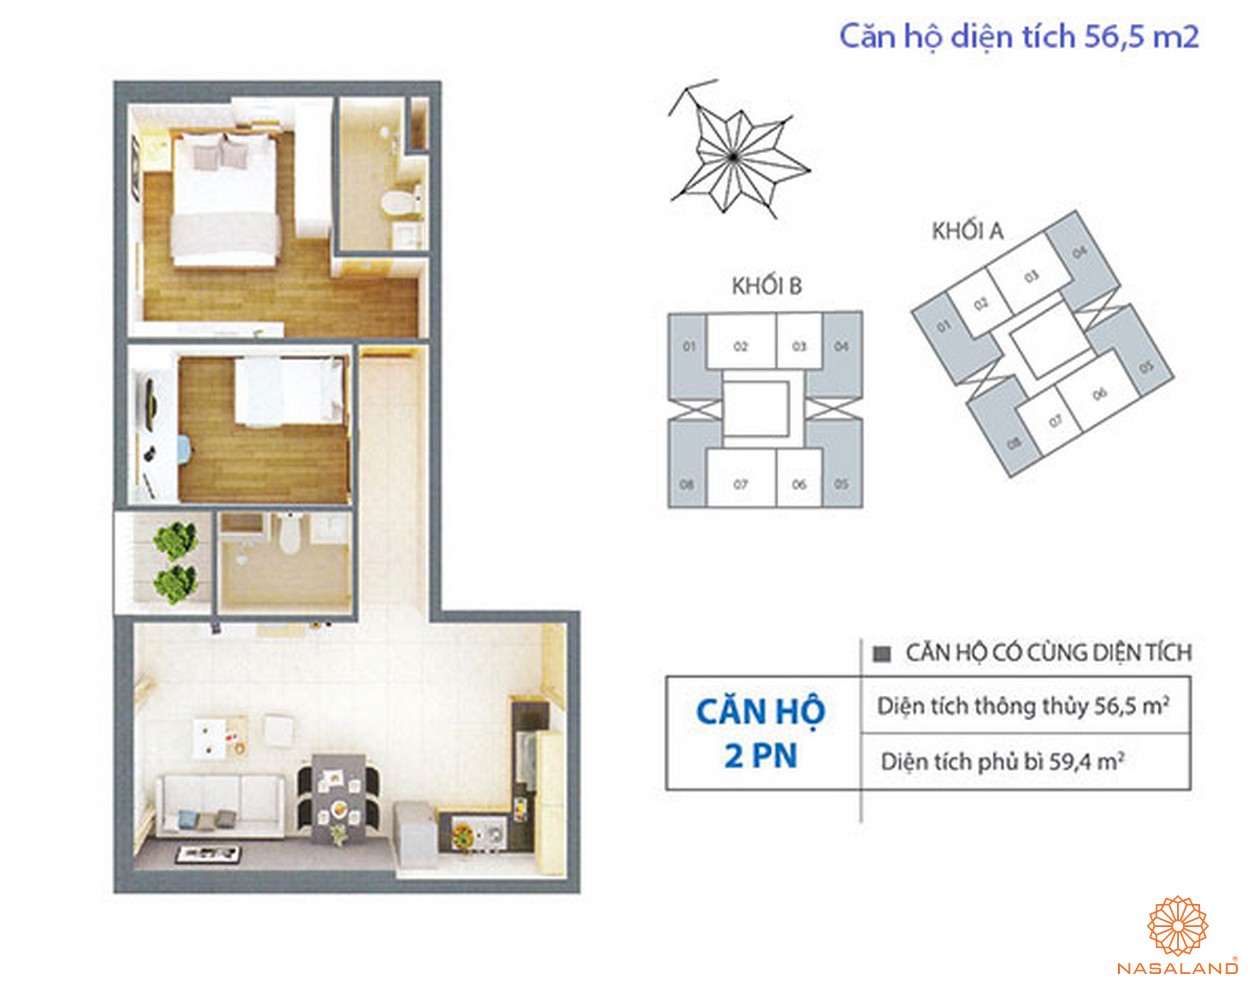 Thiết kế điển hình dự án căn hộ với diện tích 56,5 m2